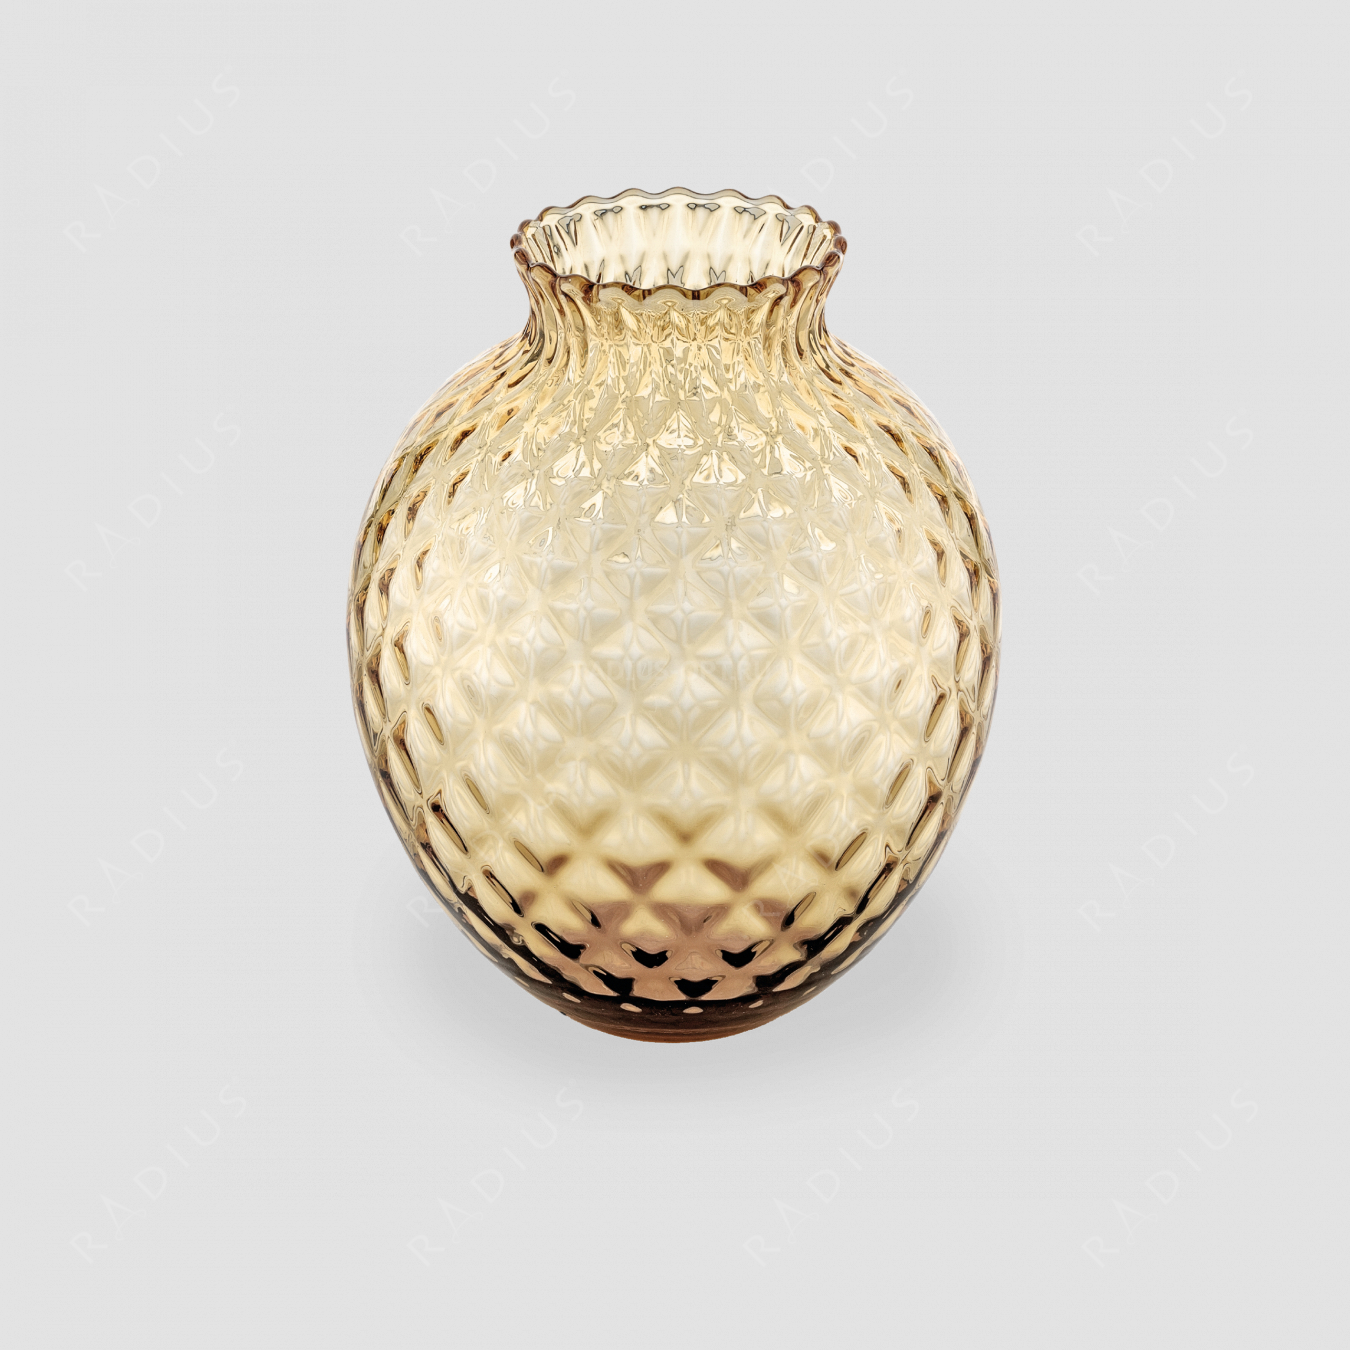 Стеклянная ваза для цветов, диаметр: 23,8 см, высота: 28,5 см, материал: стекло, цвет медовый, серия Infiore, IVV (Italy), Италия